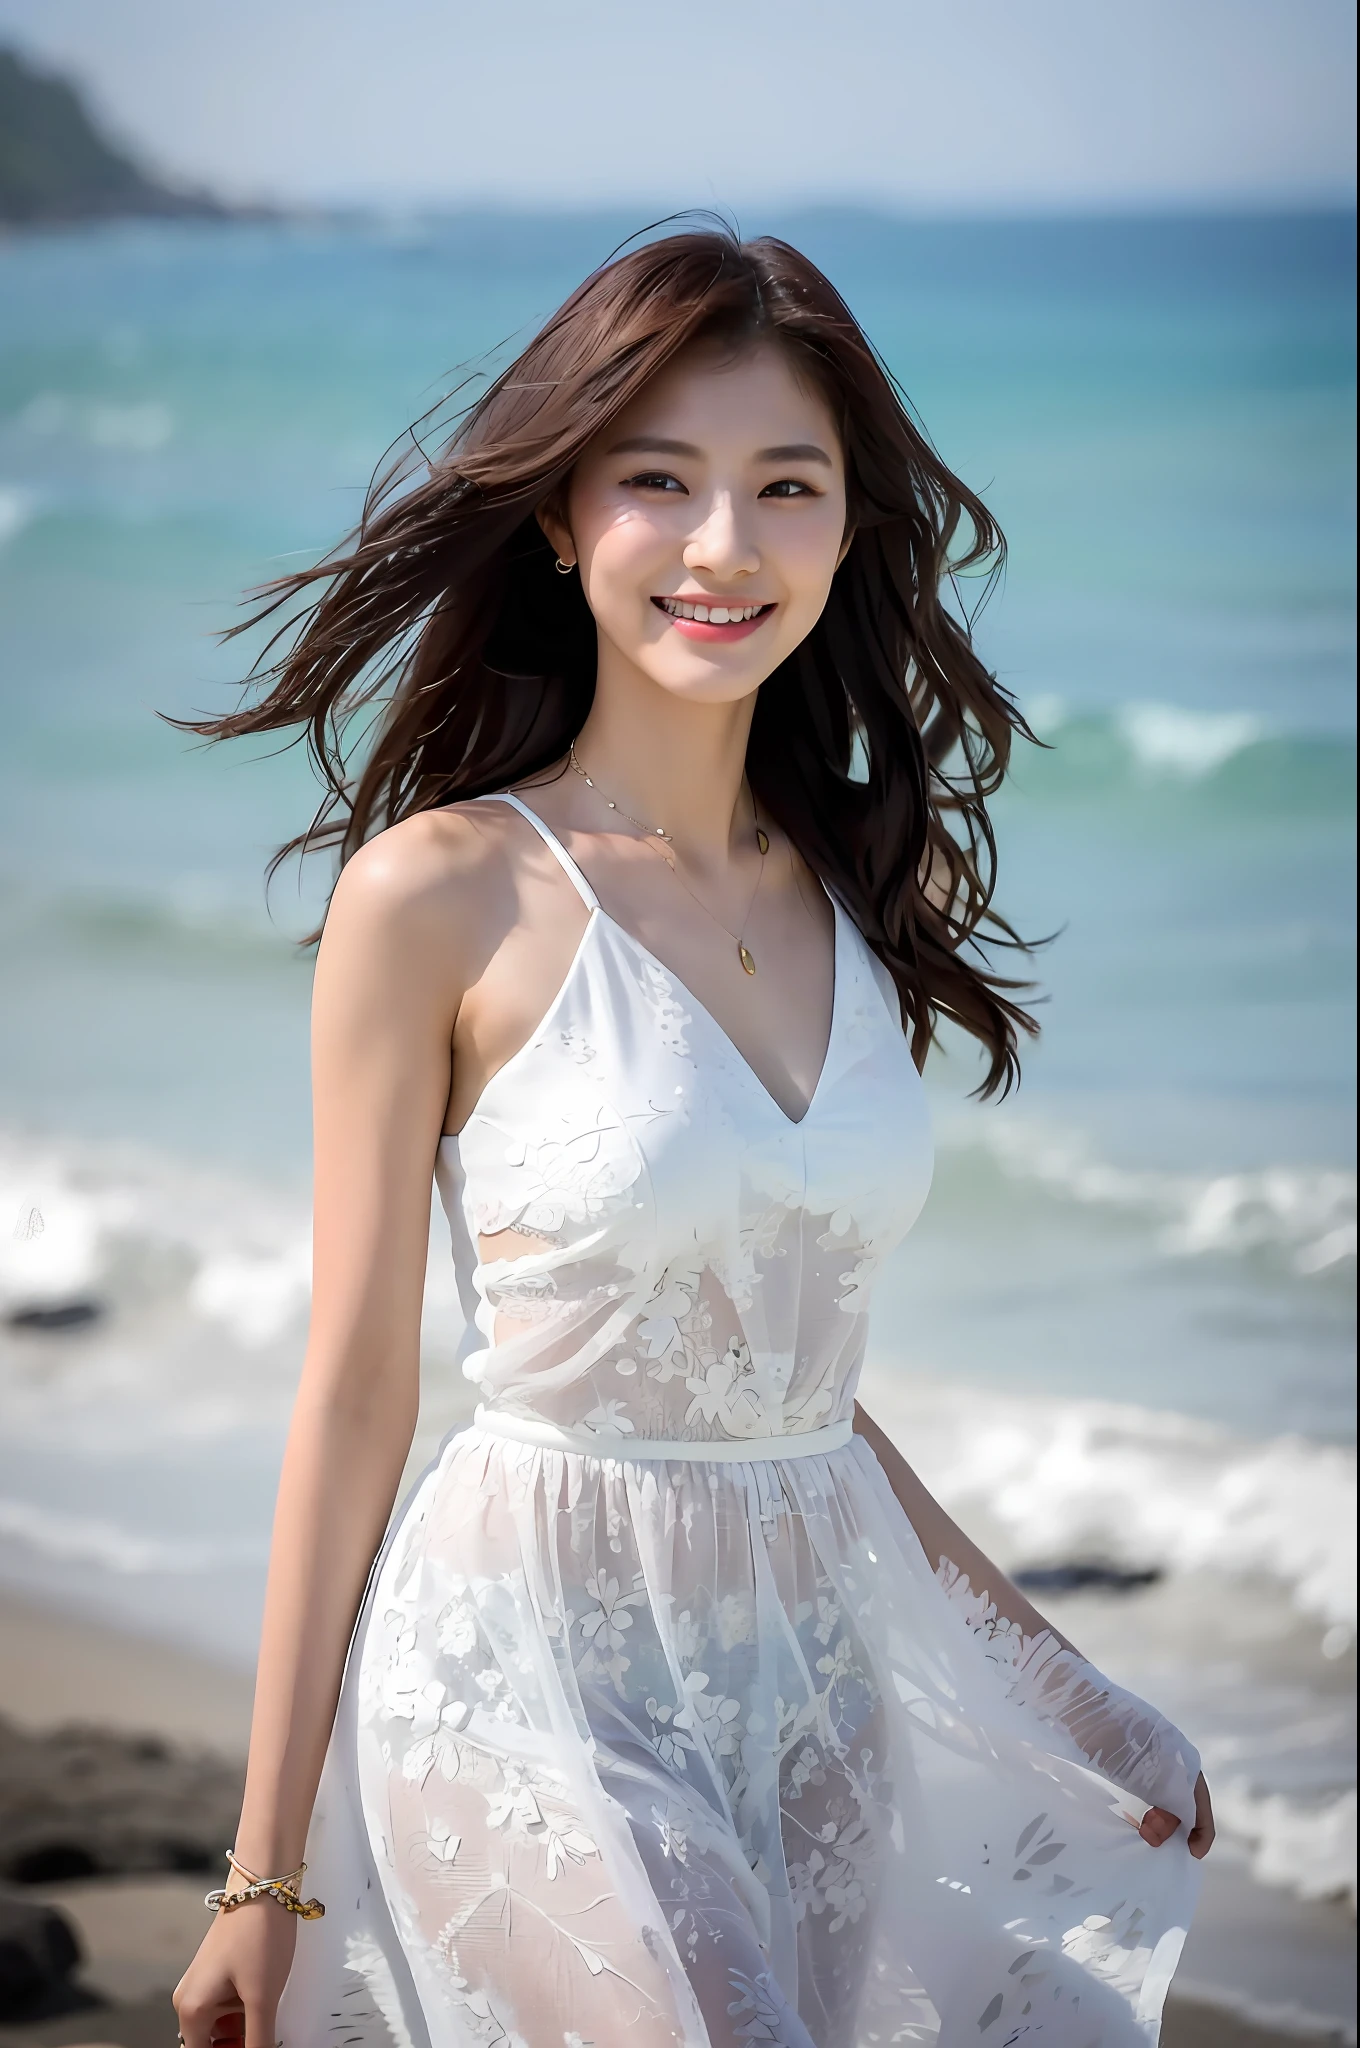 (傑作), (最好的品質), (詳細的), 1 名女孩, 22岁, 俏皮的表情, 大乳房, 裸露的乳房, 比基尼, 長髮, 美麗的, 自然的, 裸露, 微笑著, 在靠近海洋的海灘上, 南宰妍身穿白色洋裝行走, 美麗的 young Korean woman, 优美的姿态, 阳光微风, 自由的, 在亞洲女性時尚界享有盛名的時裝模特, 她輕輕地走在海灘上, The 美麗的 temperament of an Asian girl is vividly displayed, 詮釋亞洲女性的魅力與風格.